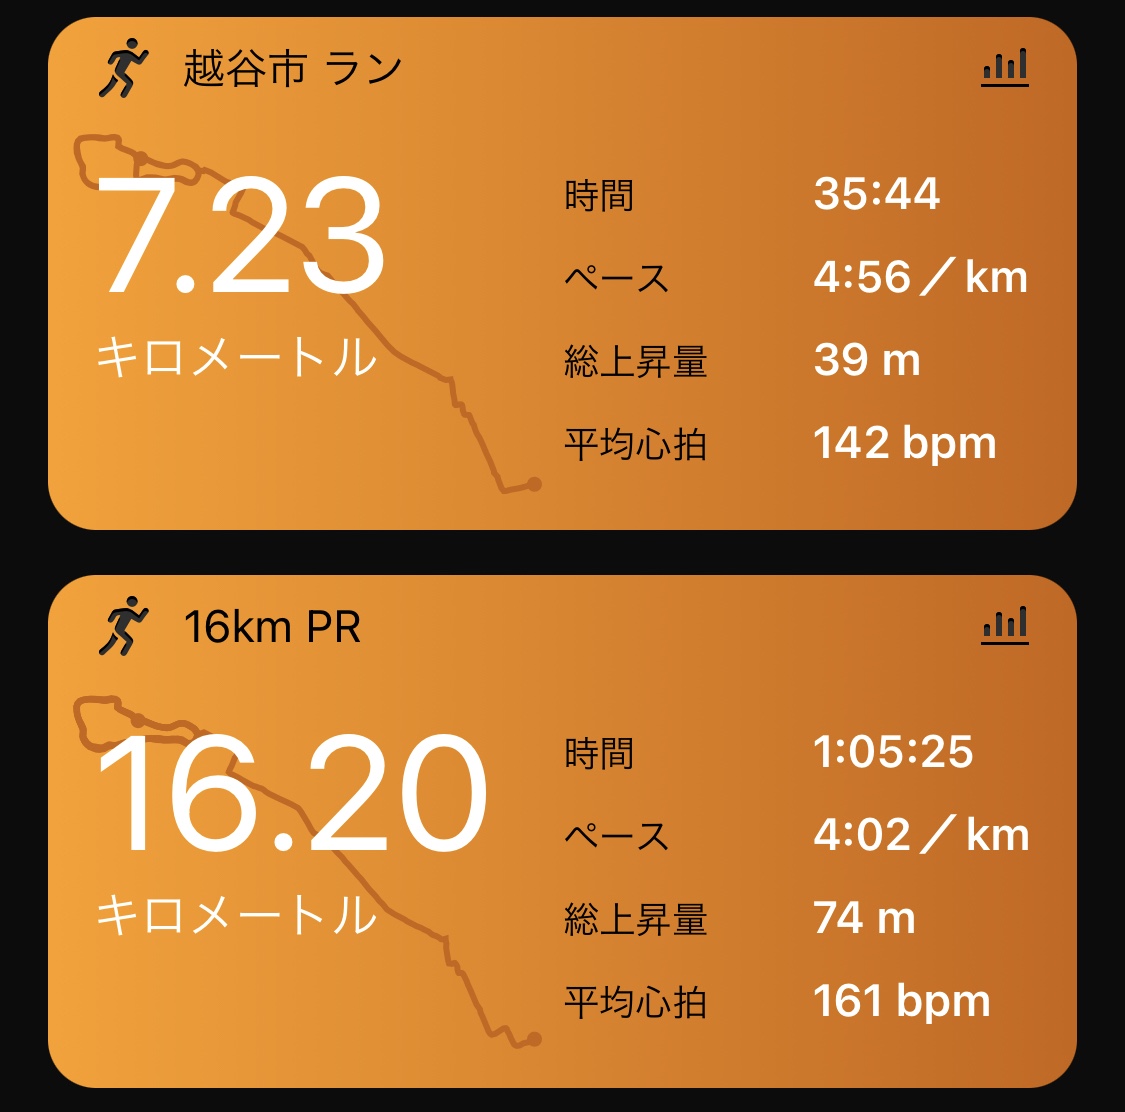 16km PR 4'02/km 7.2km jog